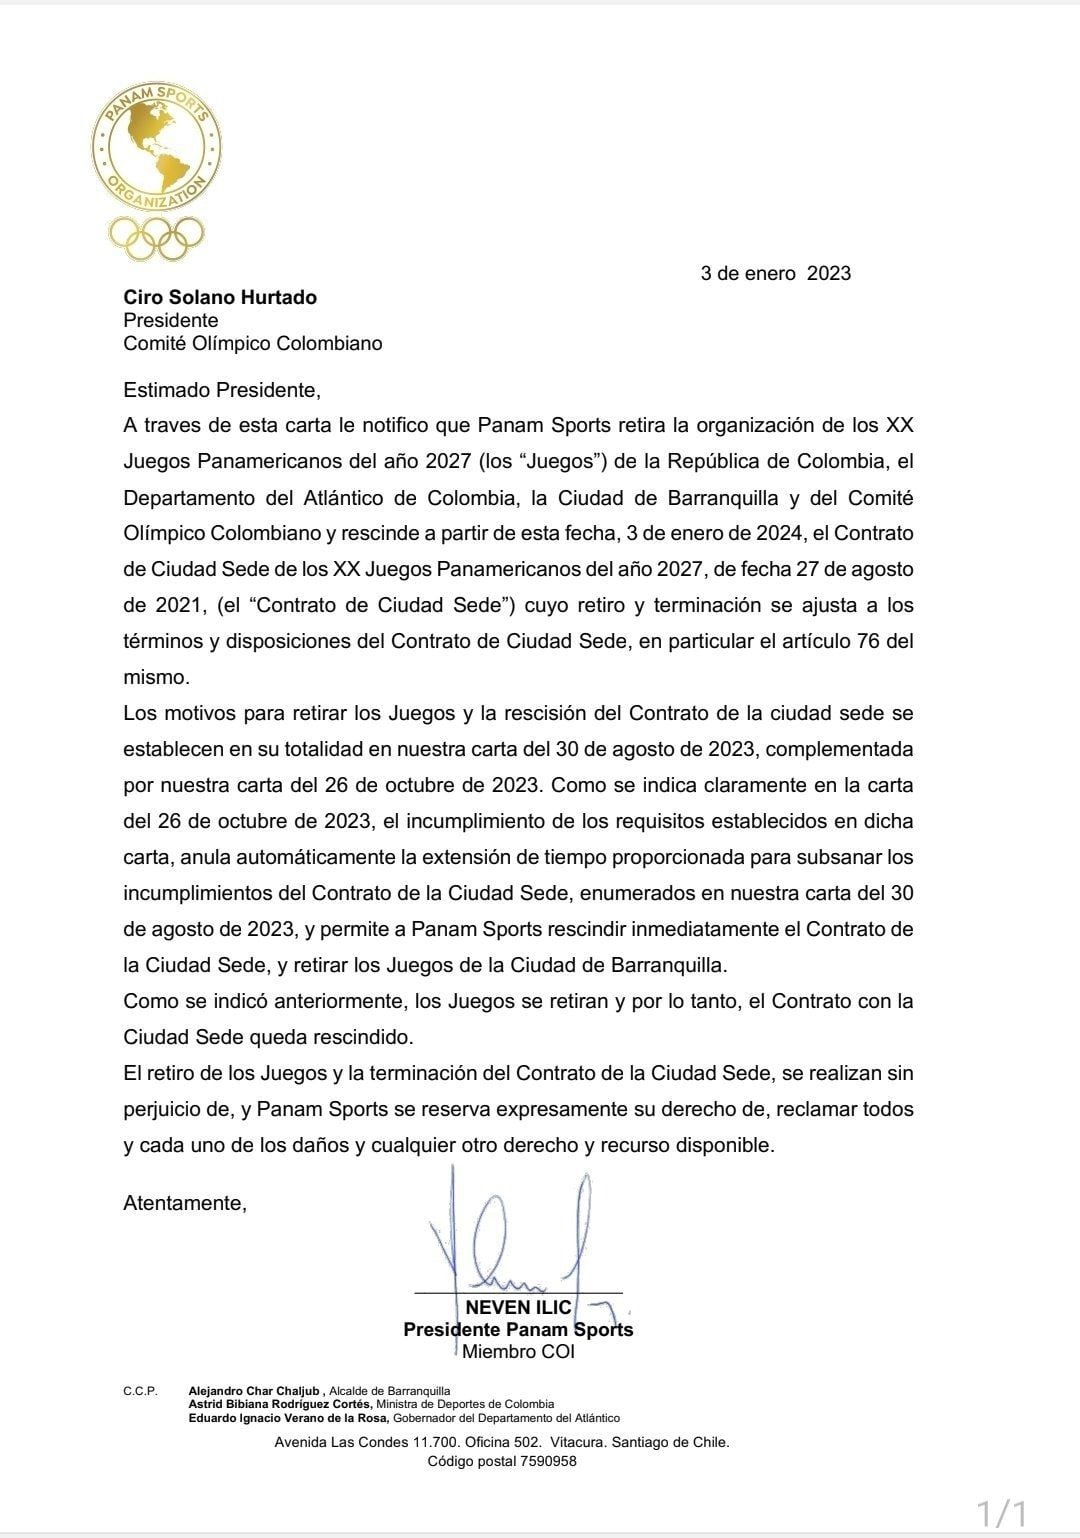 Carta donde se oficializa el retiro de Barranquilla como sede de los Juegos Panamericanos 2027.